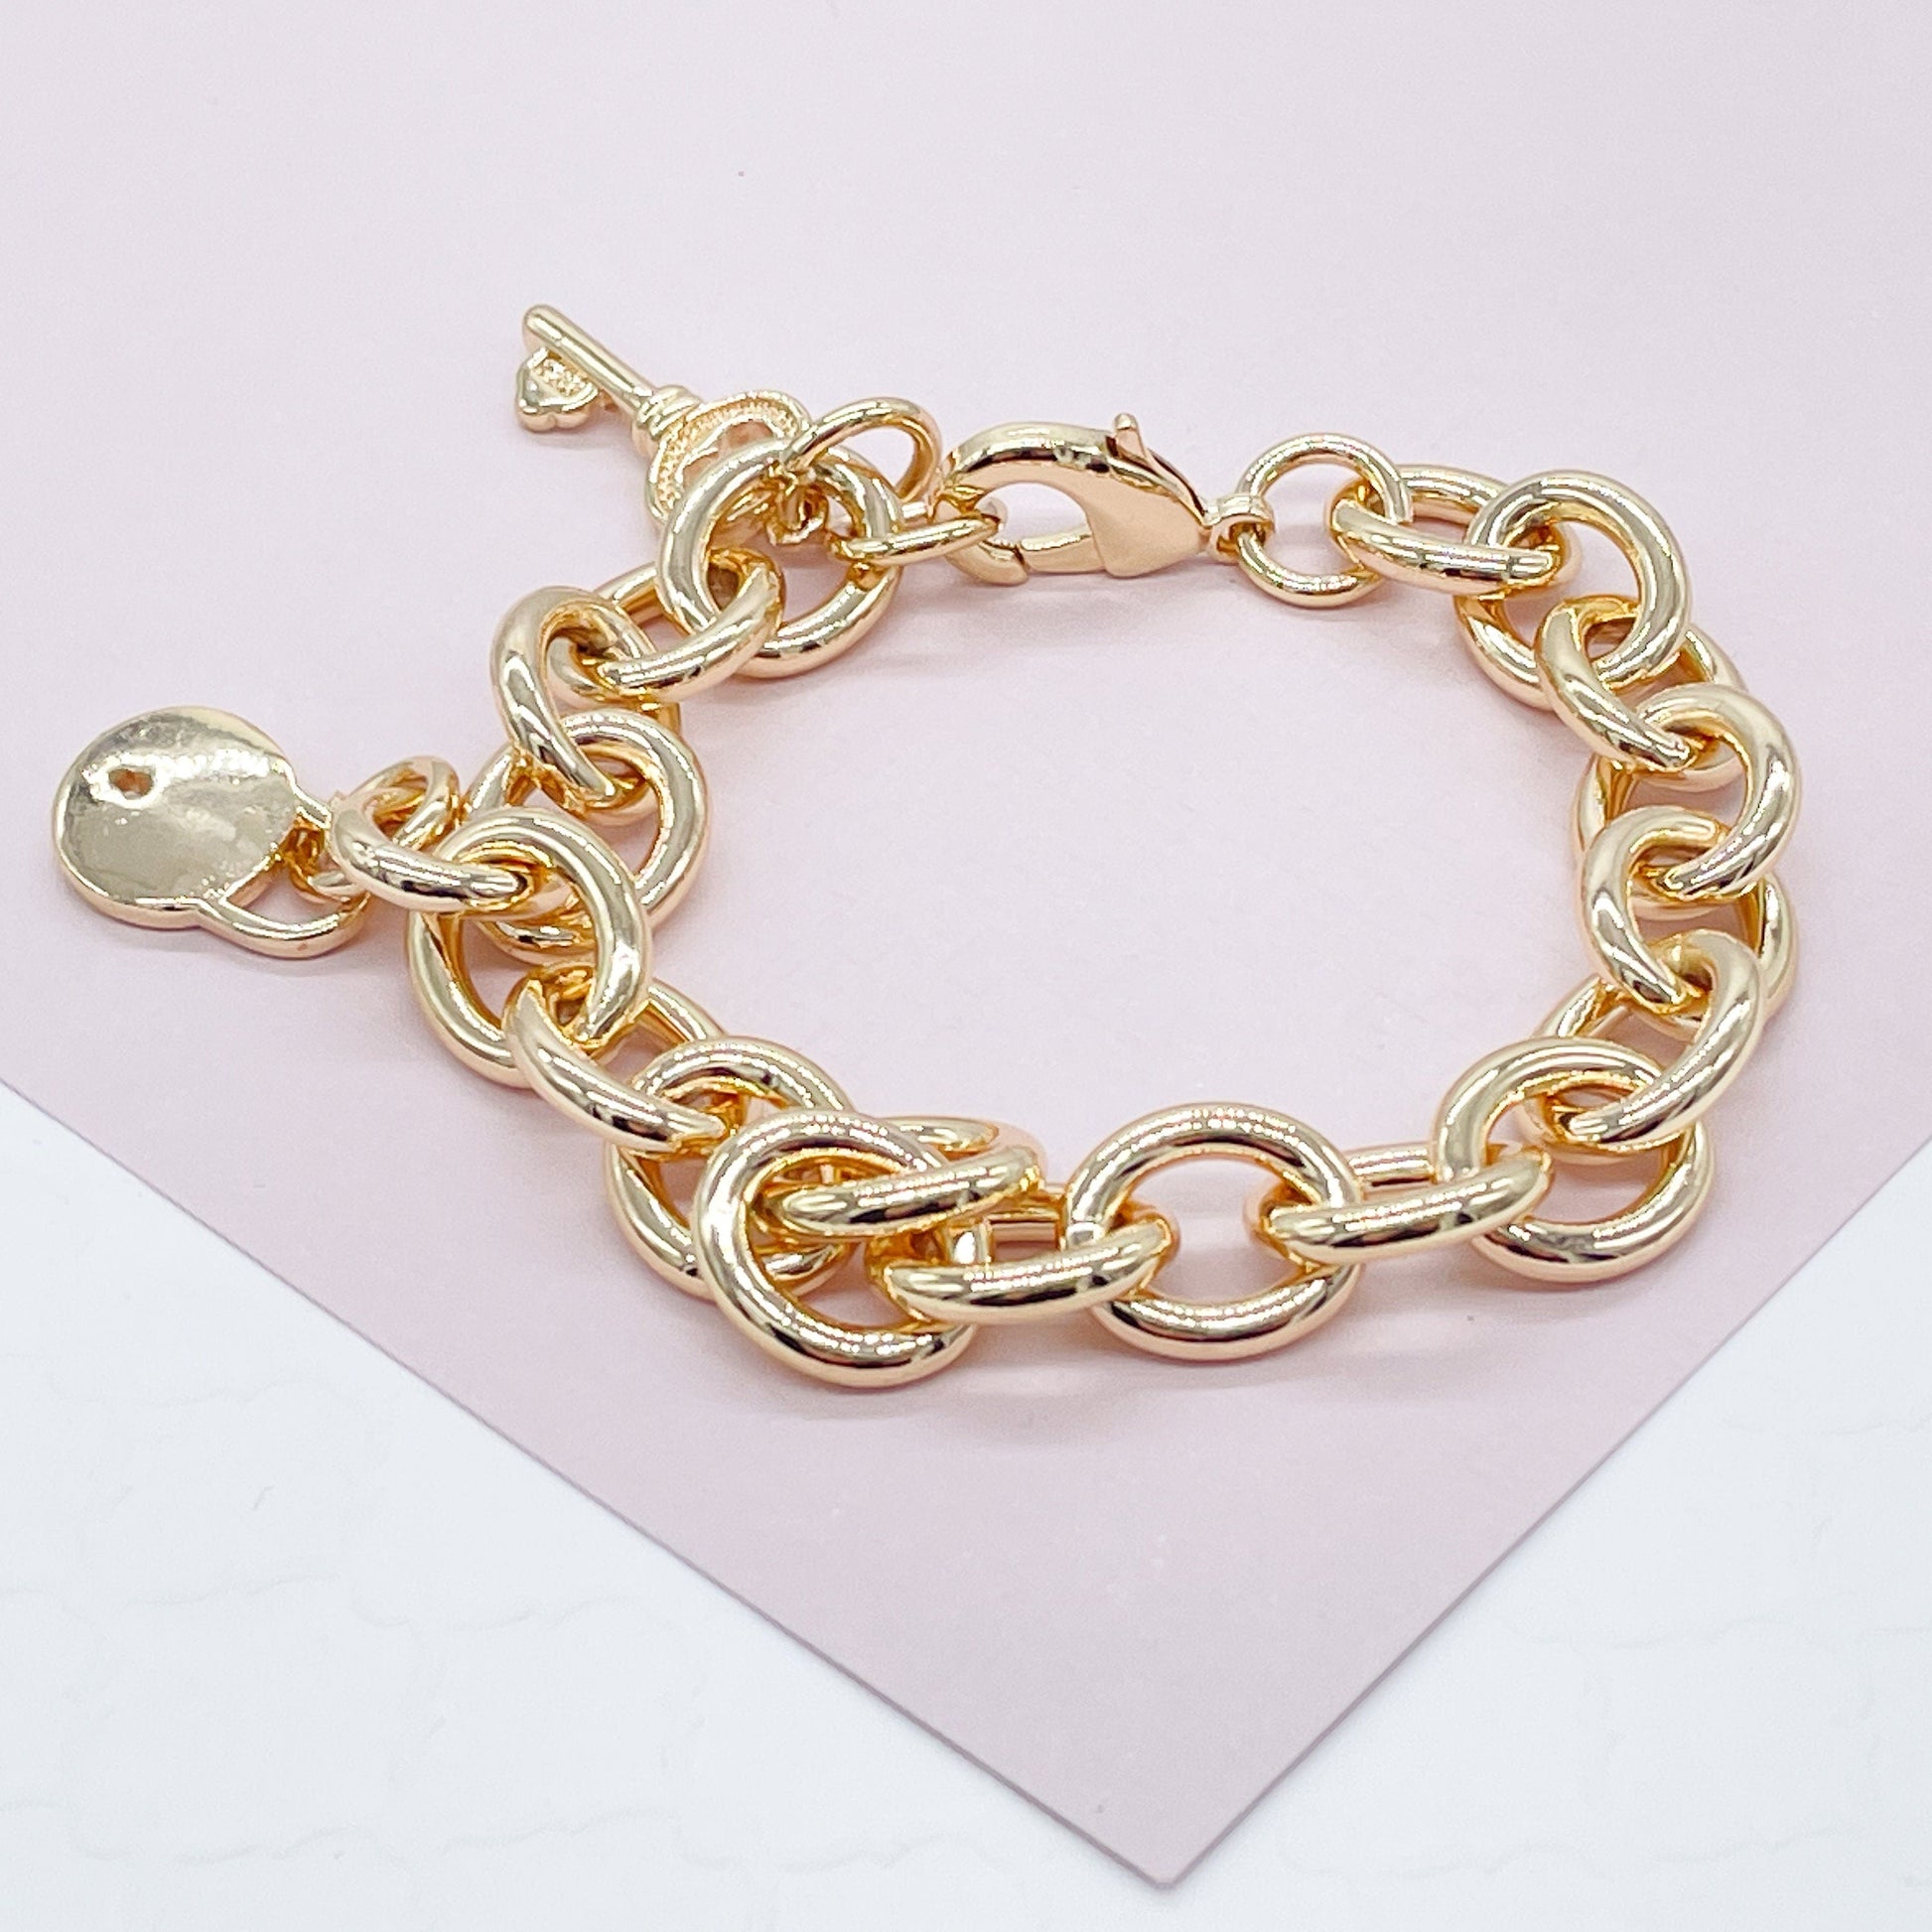 Chunky Silver Bracelet,Silver Chunky Bracelet, Lock & Key Silver Chain Bracelet for Women,Layering bracelet,Bangle Bracelet